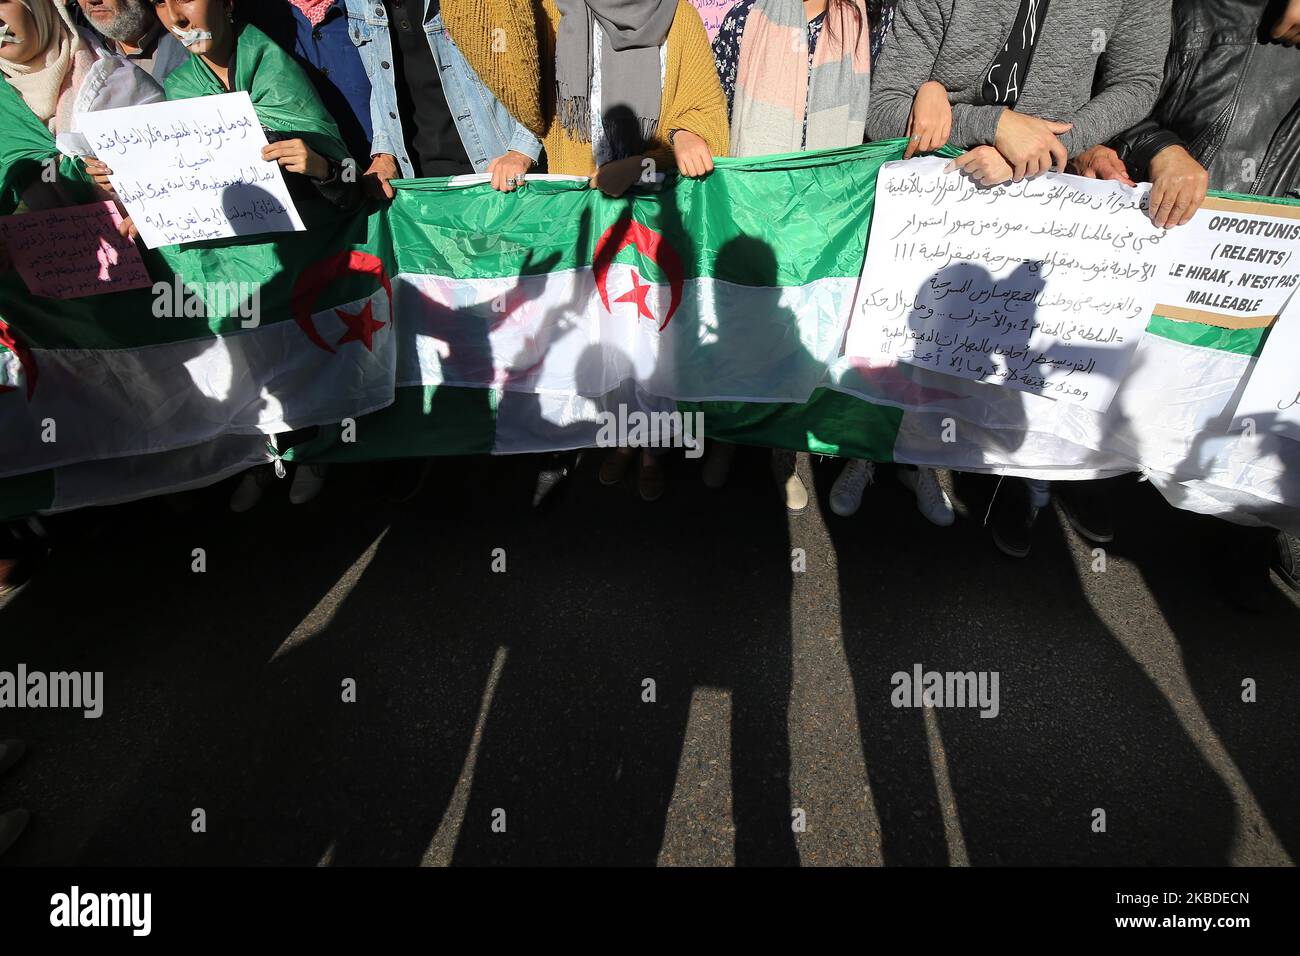 Gli algerini cantano slogan mentre marciano durante una manifestazione anti-governativa ad Algeri, Algerino, 24 dicembre 2019 (Foto di Billal Bensalem/Nuralem Foto) Foto Stock